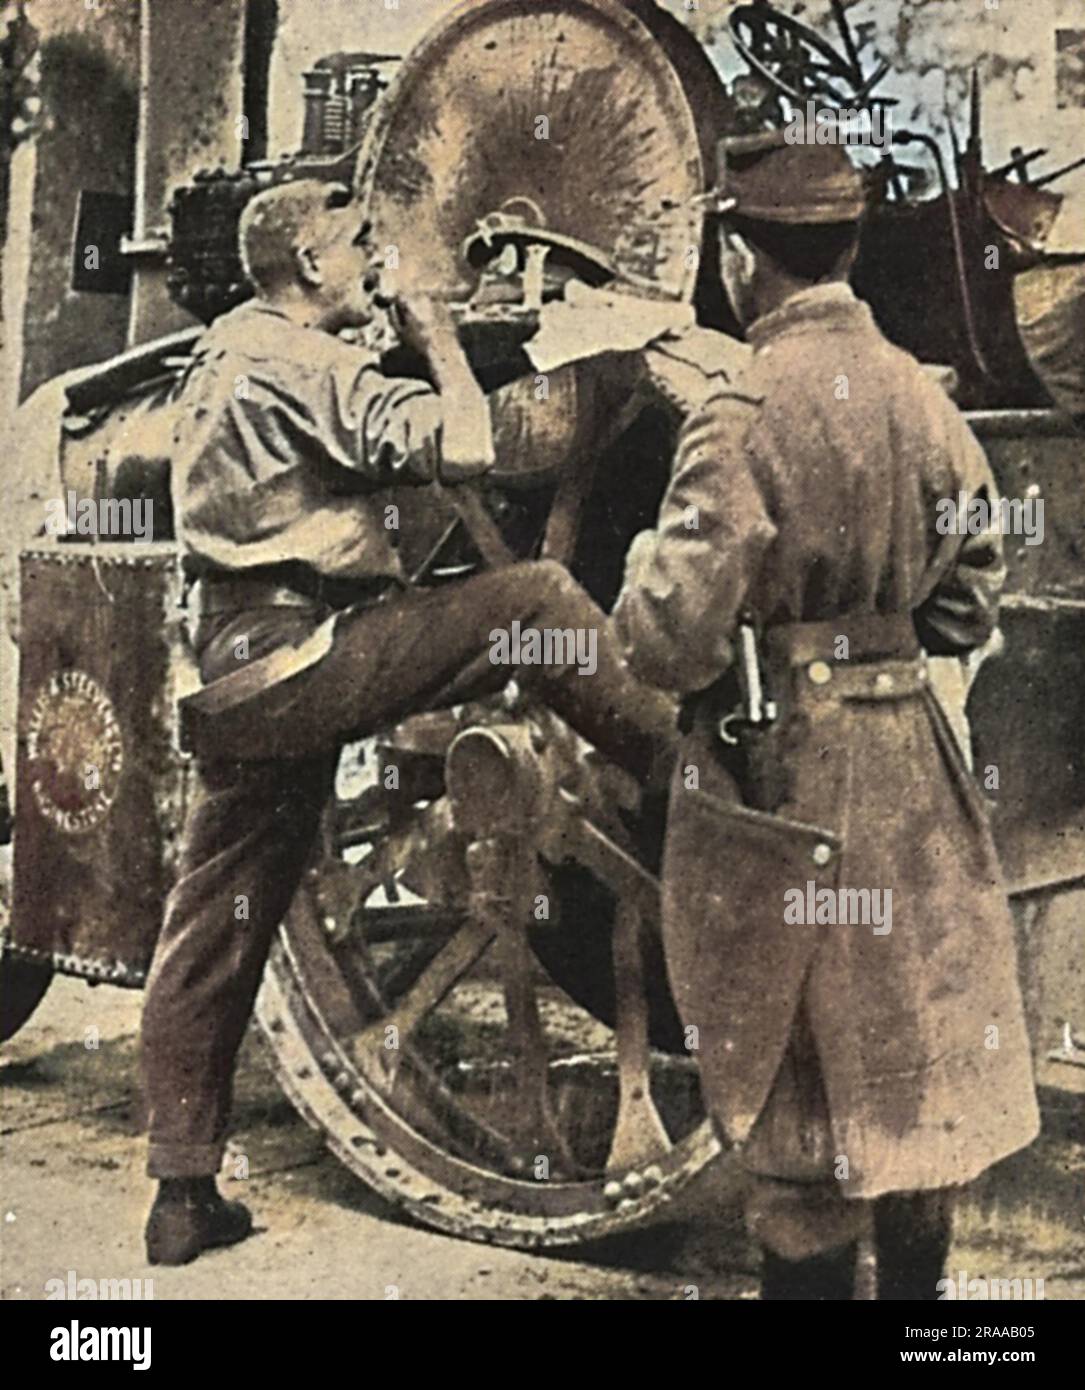 Un soldato della British Expeditionary Force, arrivato a Boulogne, viene osservato mentre si rasa da un compagno francese. Data: Ago-14 Foto Stock